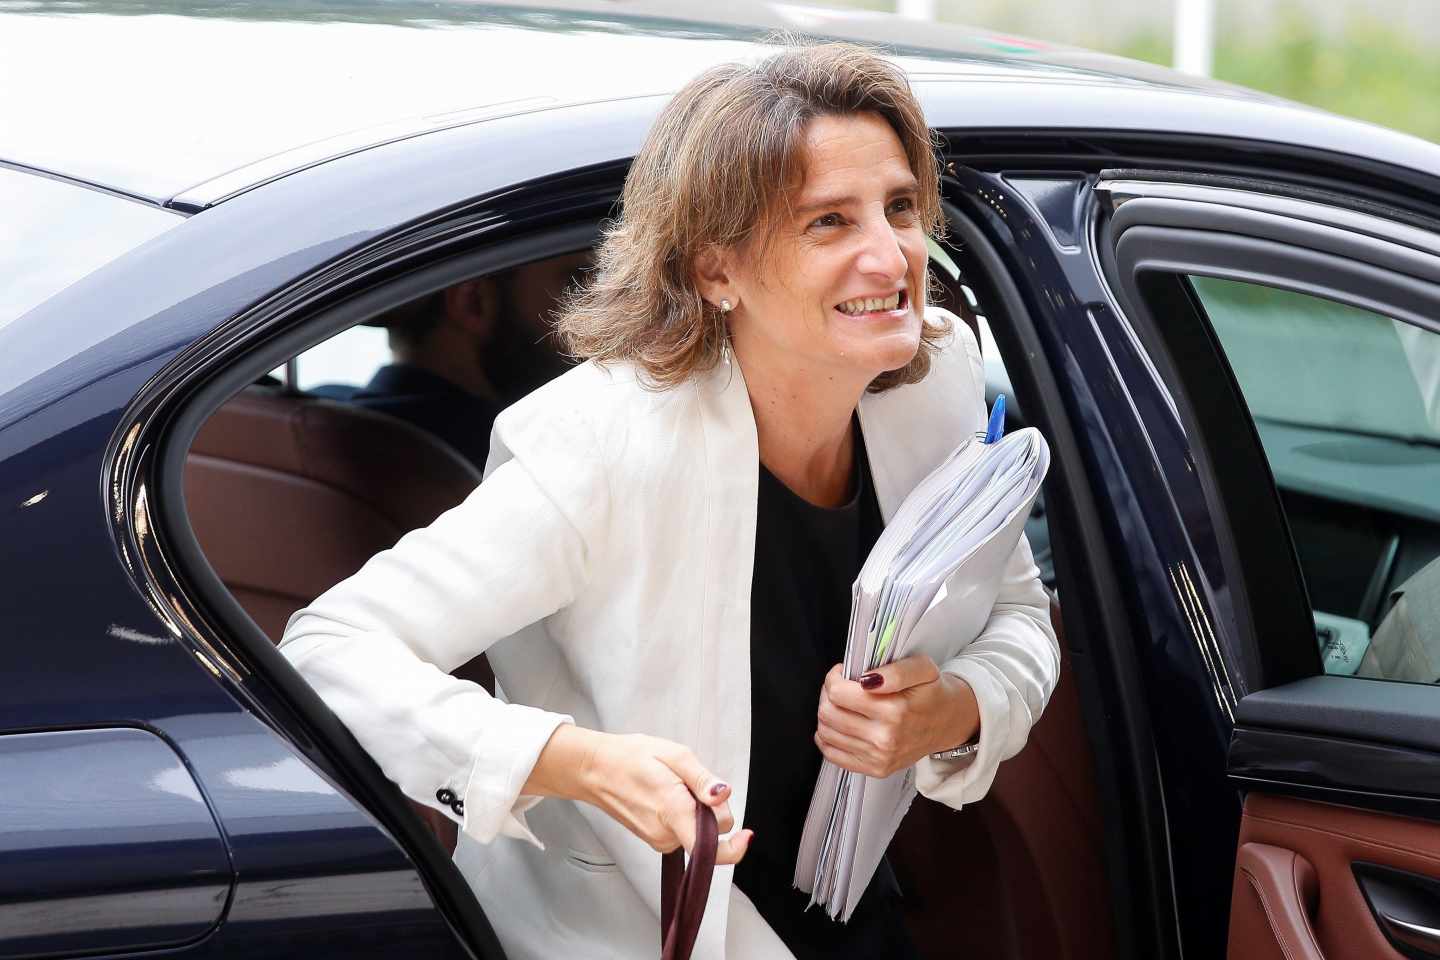 La ministra para la Transición Ecológica, Teresa Ribera.